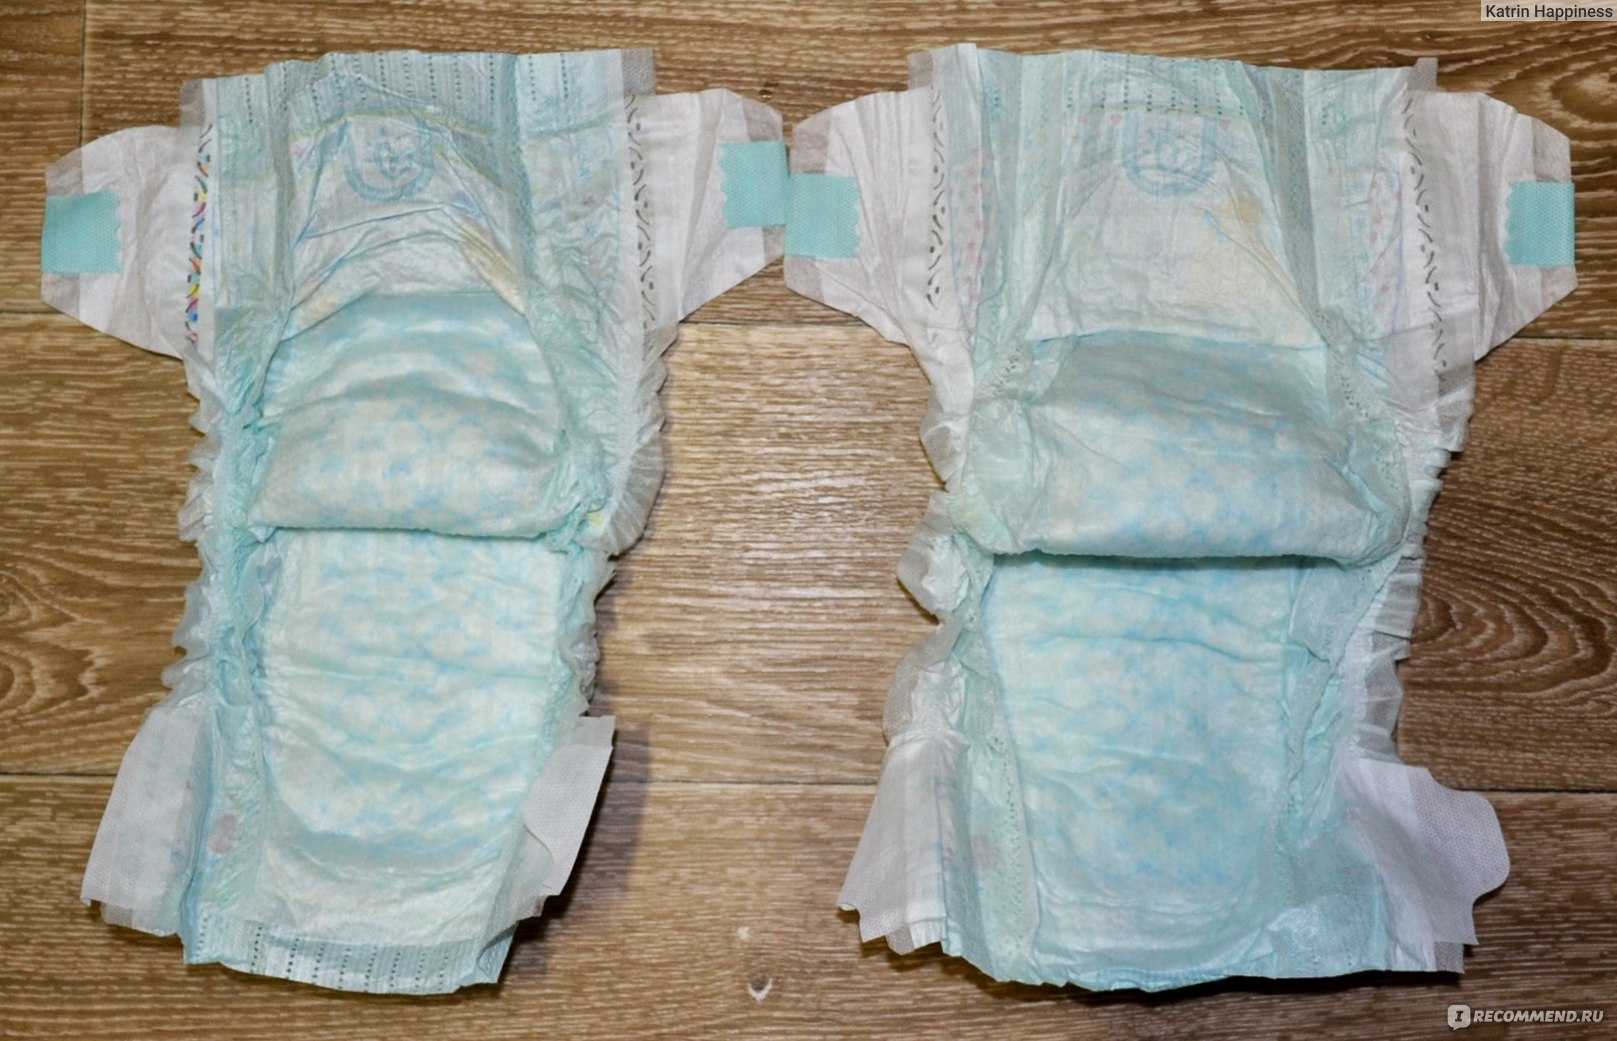 Когда появились памперсы в россии: кто придумал и год изобретения, история подгузников